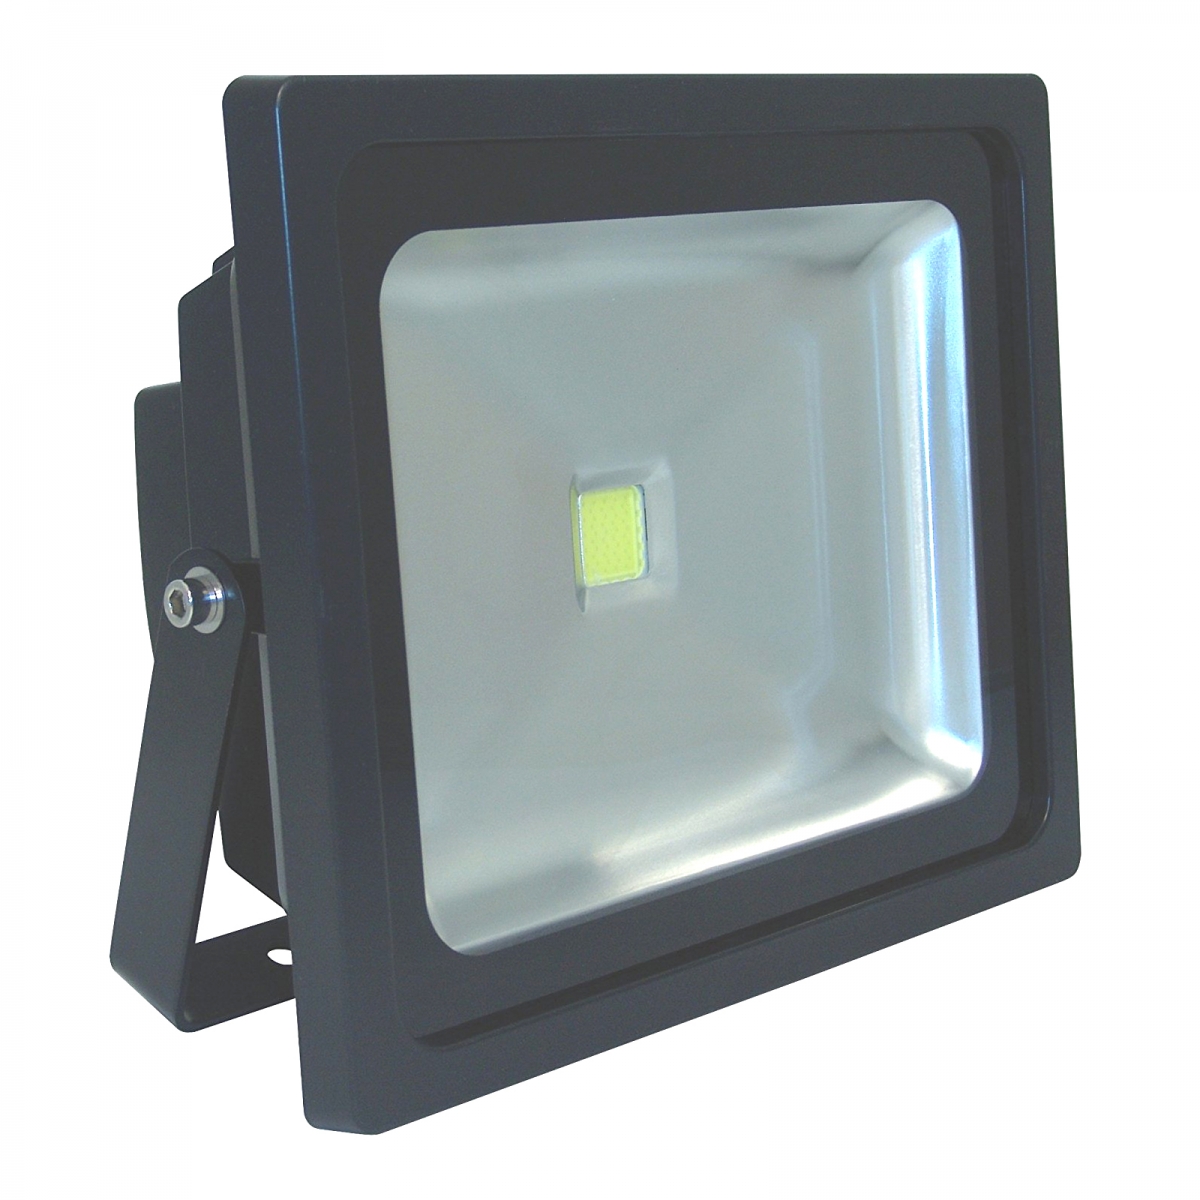 LED Strahler Außen 50W warmweiß Außenleuchte Wandstrahler LED Fluter Aussen,  Spot beweglich, Alu schwarz, 1x 4300Lm, LxBxH 19,8x2,8x16,7 cm